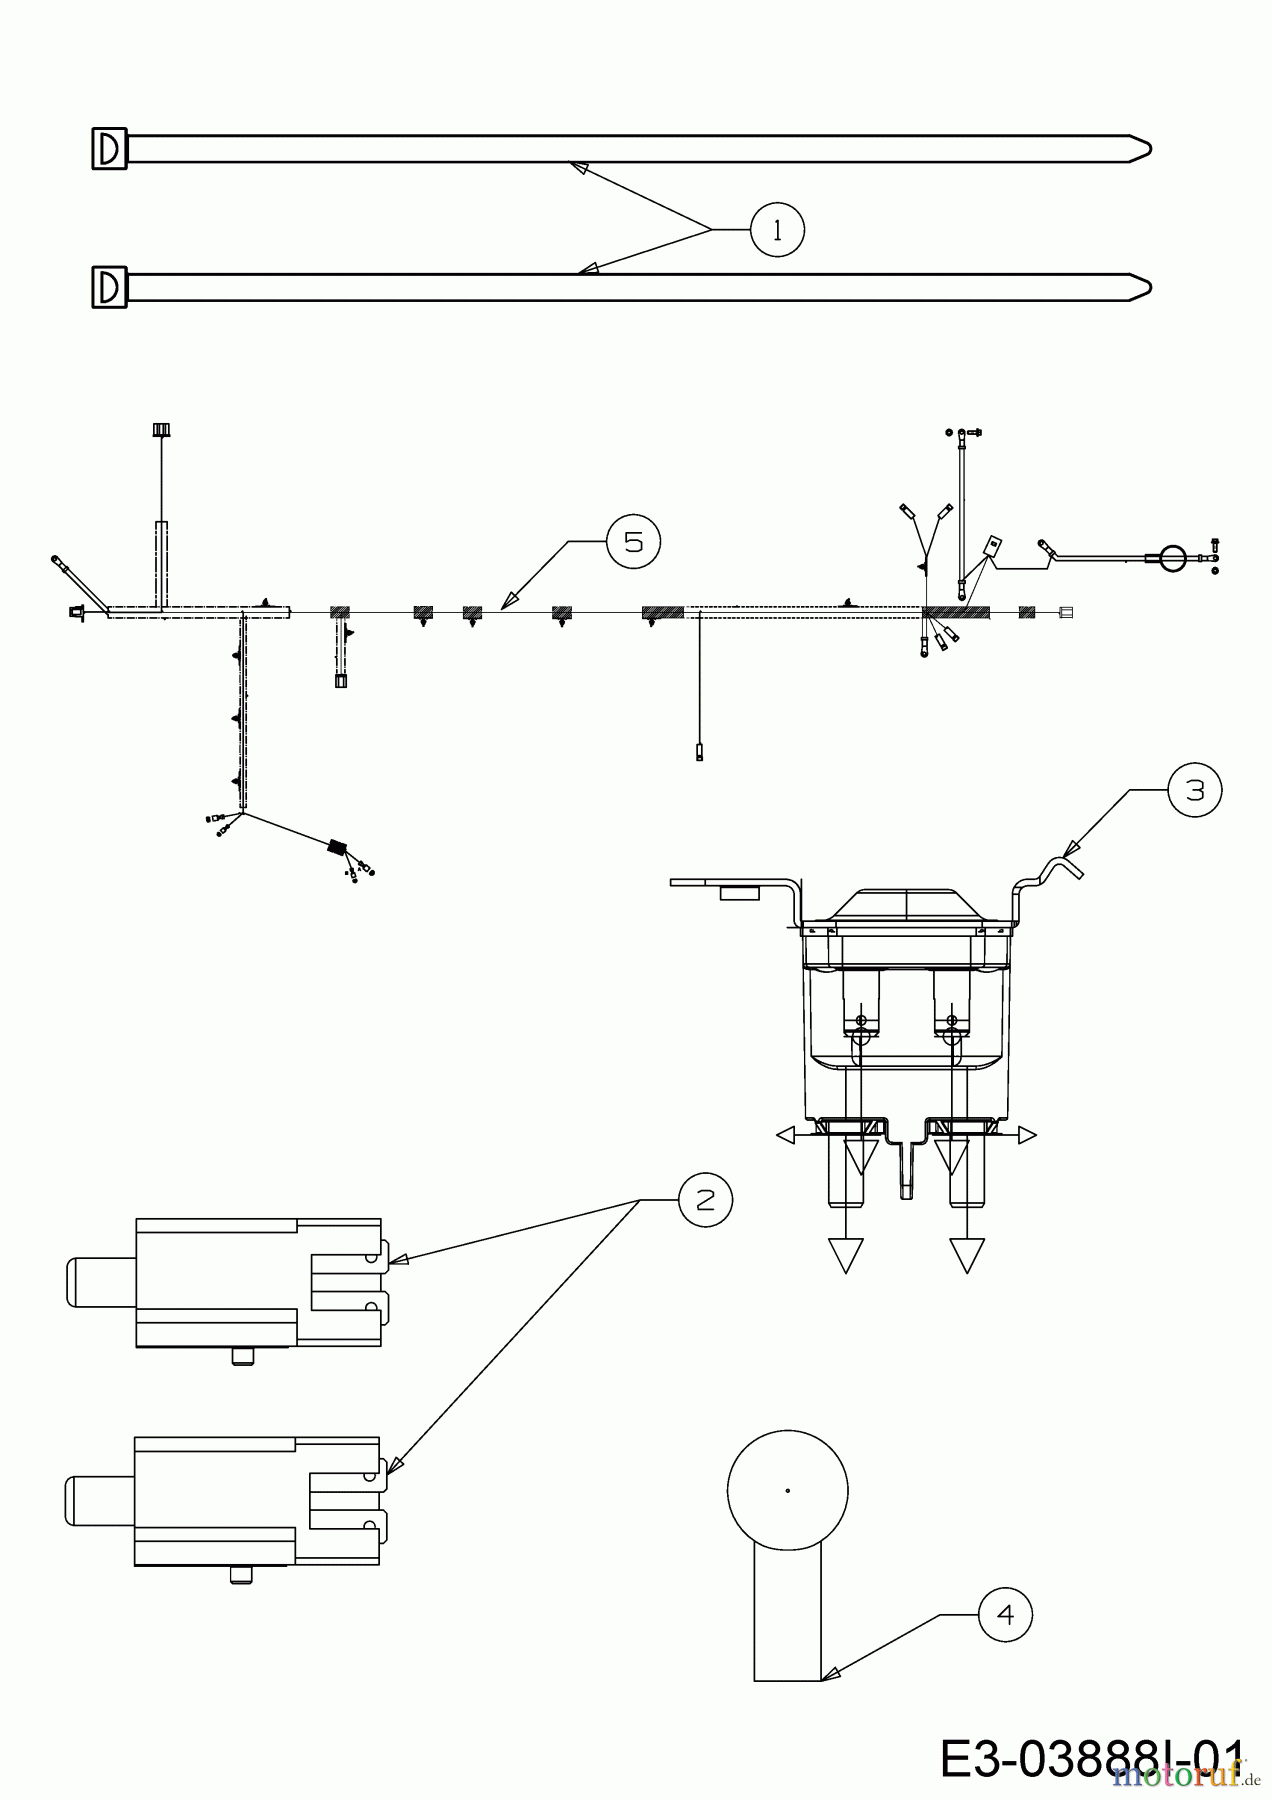  Helington Rasentraktoren H 92 T 13I276KE686  (2018) Elektroteile